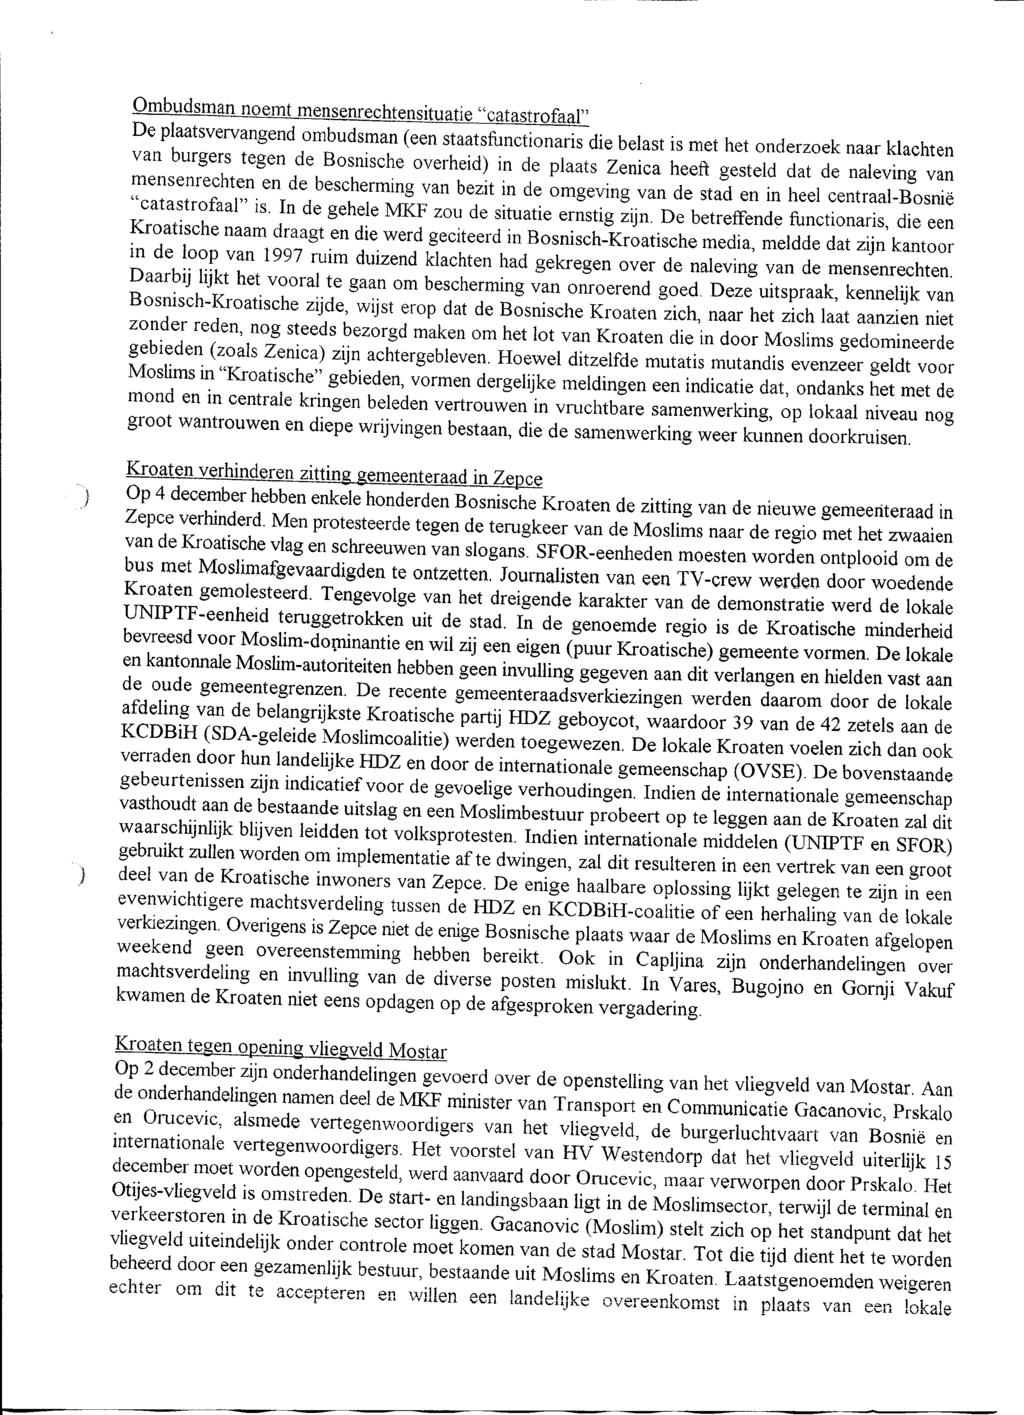 Ombudsman noemt mensenrechtensituatie "catastrofaal" De plaatsvervangend ombudsman (een staatsfunctionaris die belast is met het onderzoek naar klachten van burgers tegen de Bosnische overheid) in de